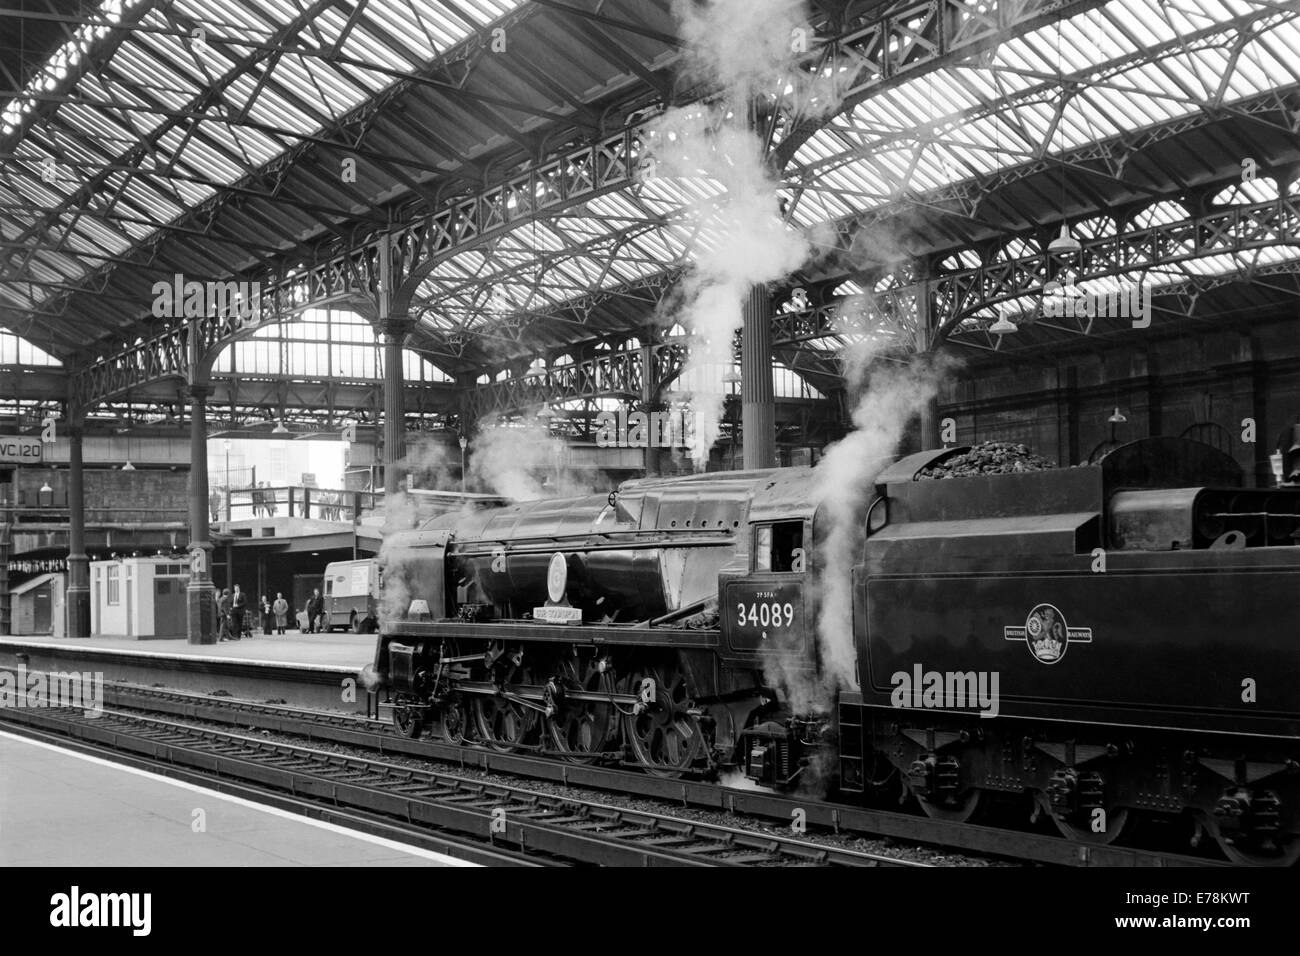 Originale il treno a vapore numero 34089 602 Squadrone operante su ferrovie britanniche durante gli anni sessanta Foto Stock